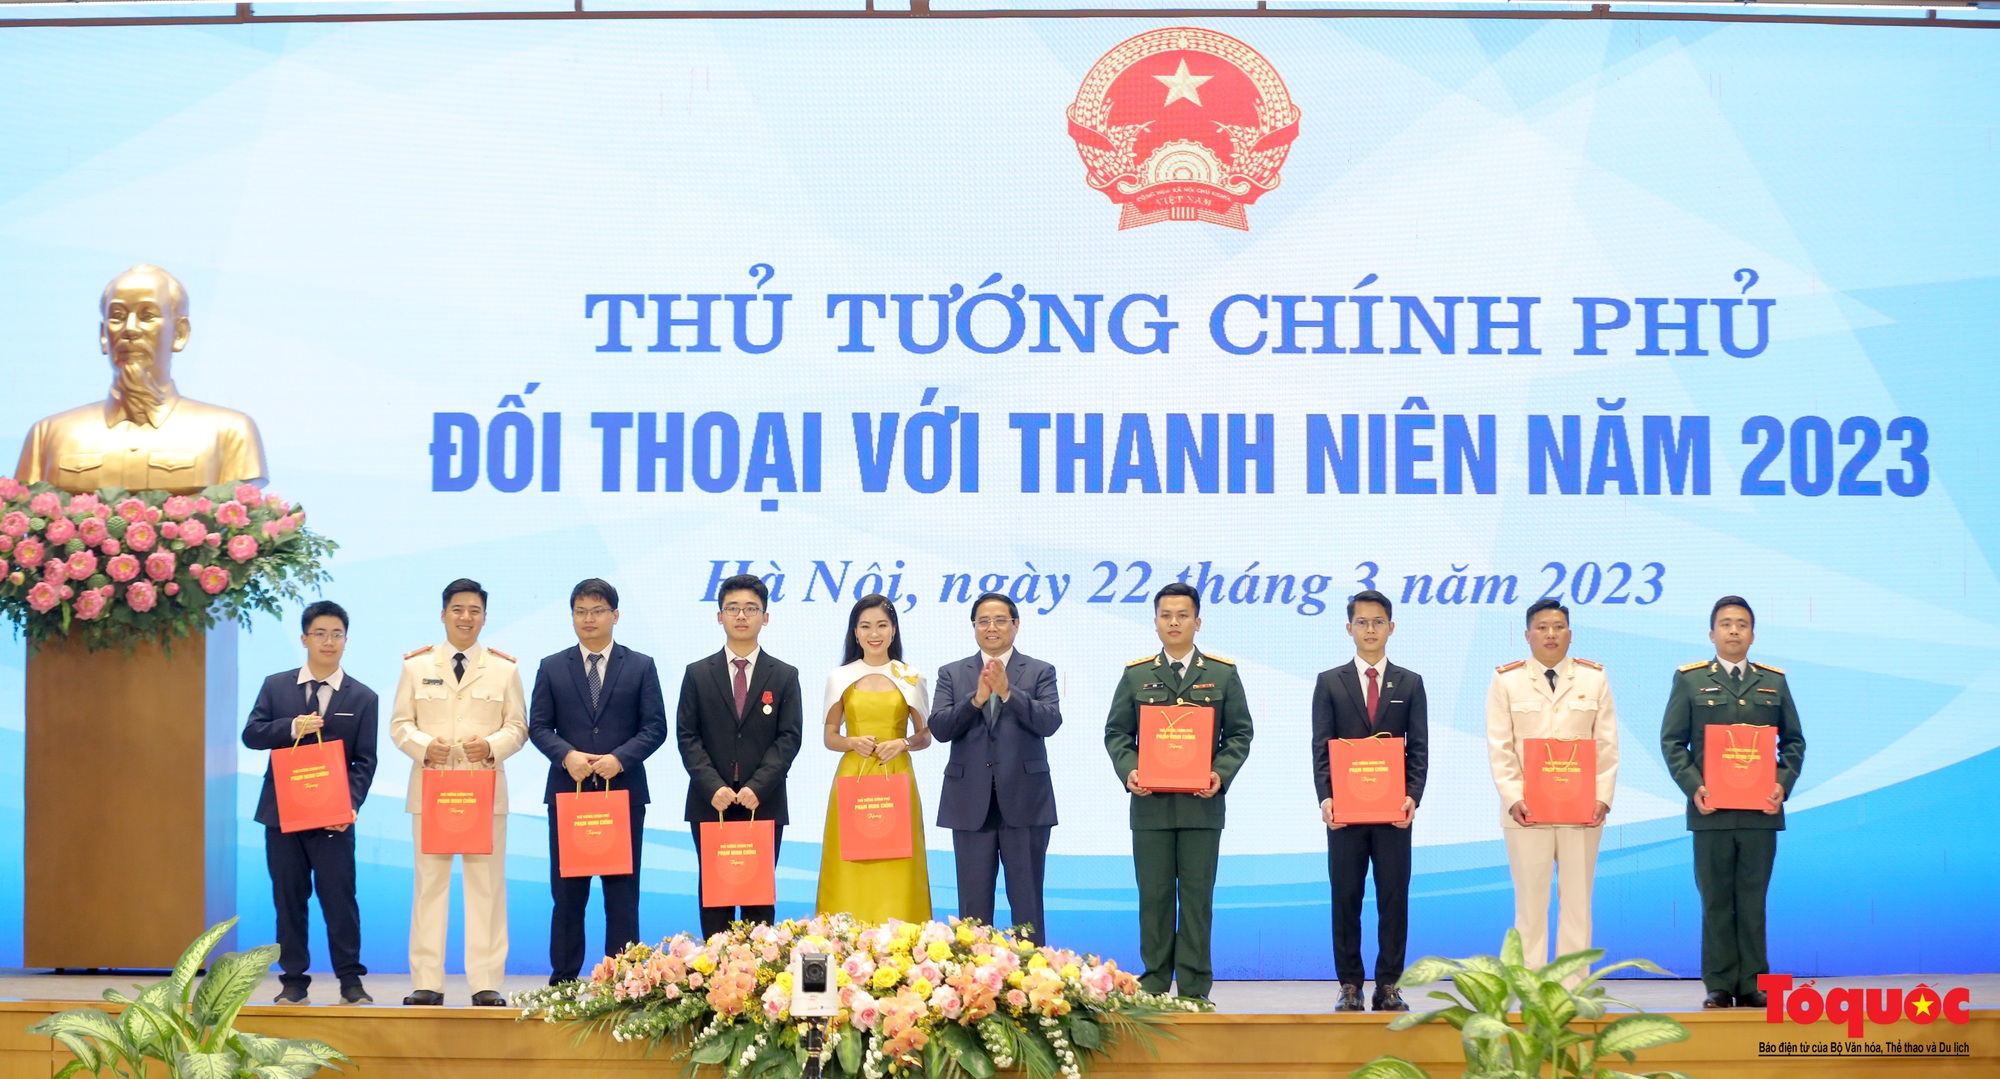 Chùm ảnh: Thủ tướng Chính phủ Phạm Minh Chính đối thoại với thanh niên Việt Nam - Ảnh 5.